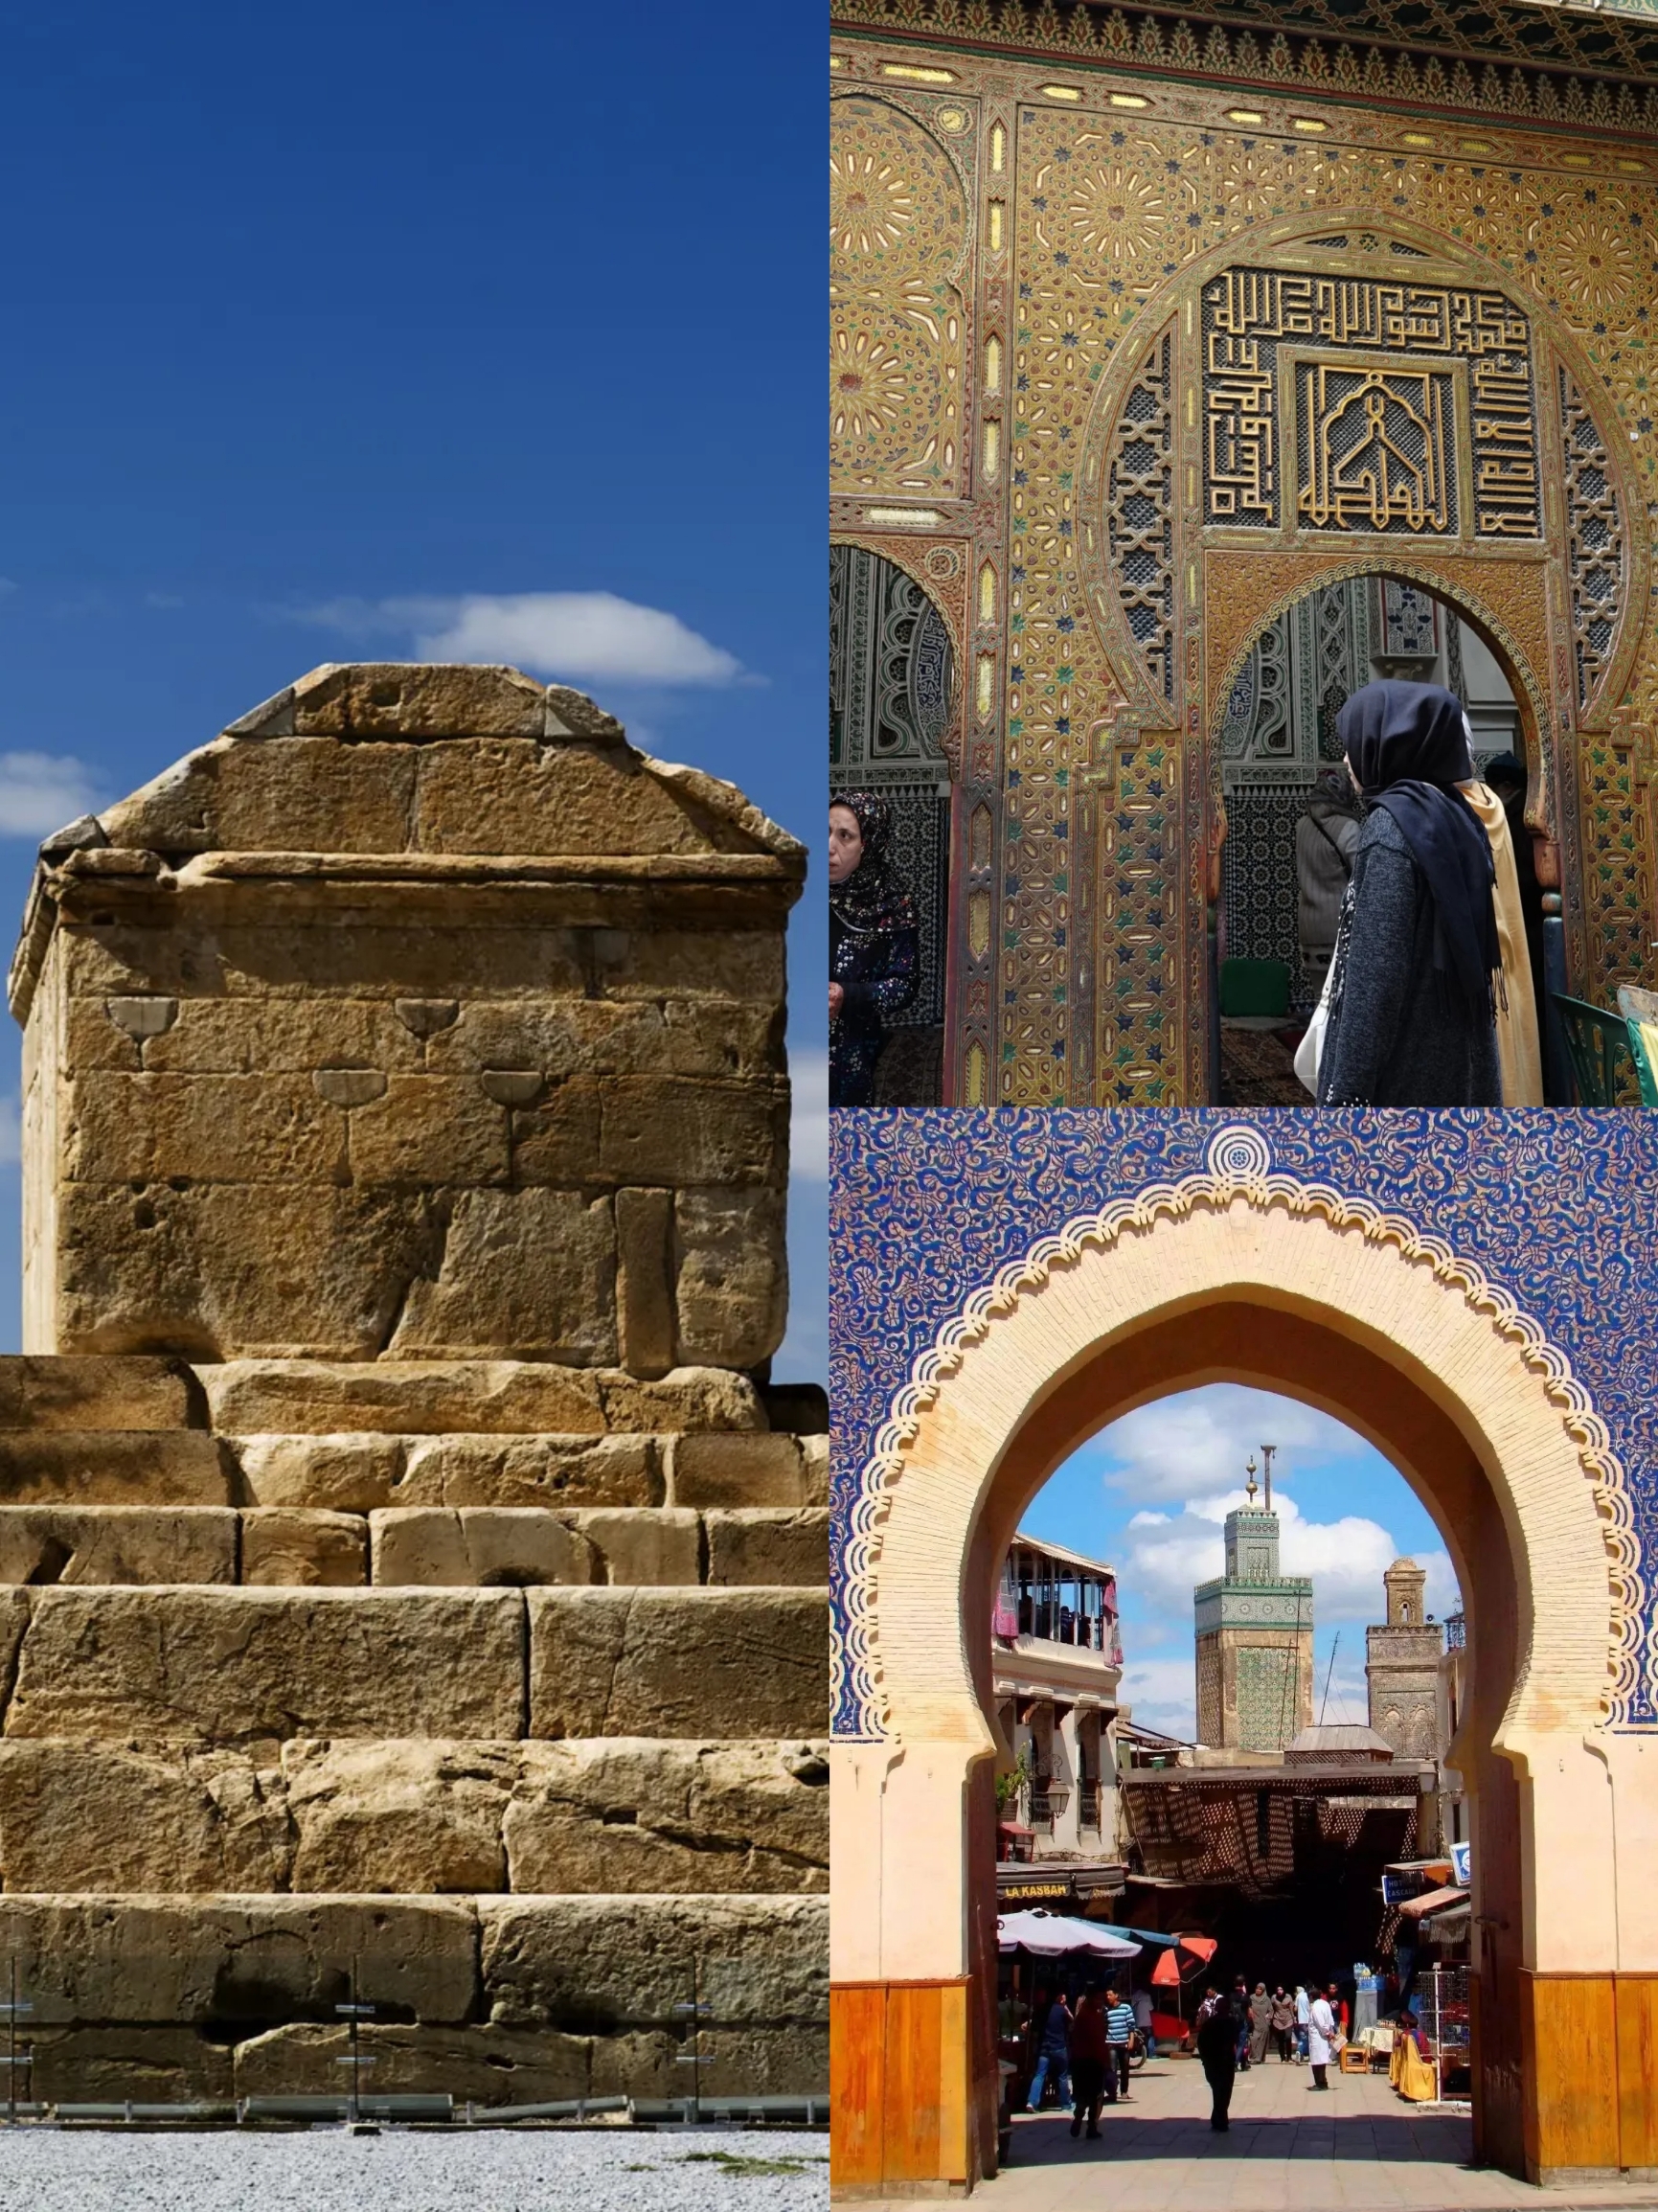 萨曼王朝陵寝，位于乌兹别克布哈拉市中心公园内。10世纪早期。 相较于巴格达的哈里发们的绝对权威，管制